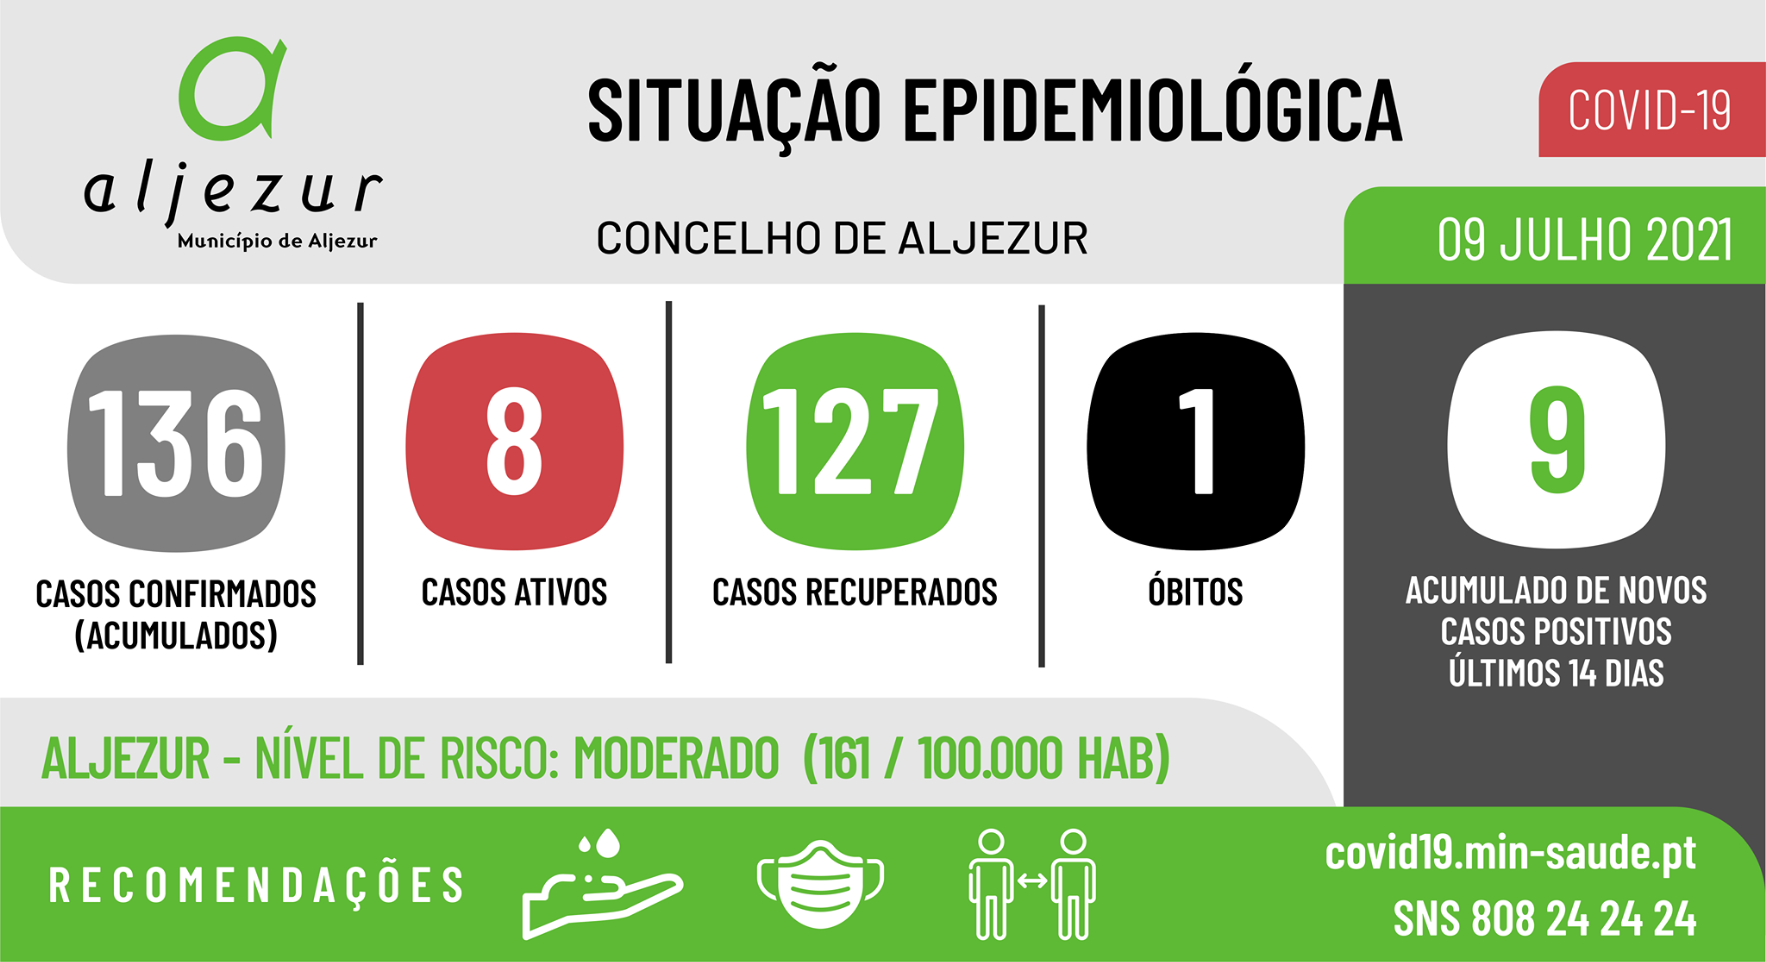 COVID-19: Situação epidemiológica em Aljezur [09/07/2021]